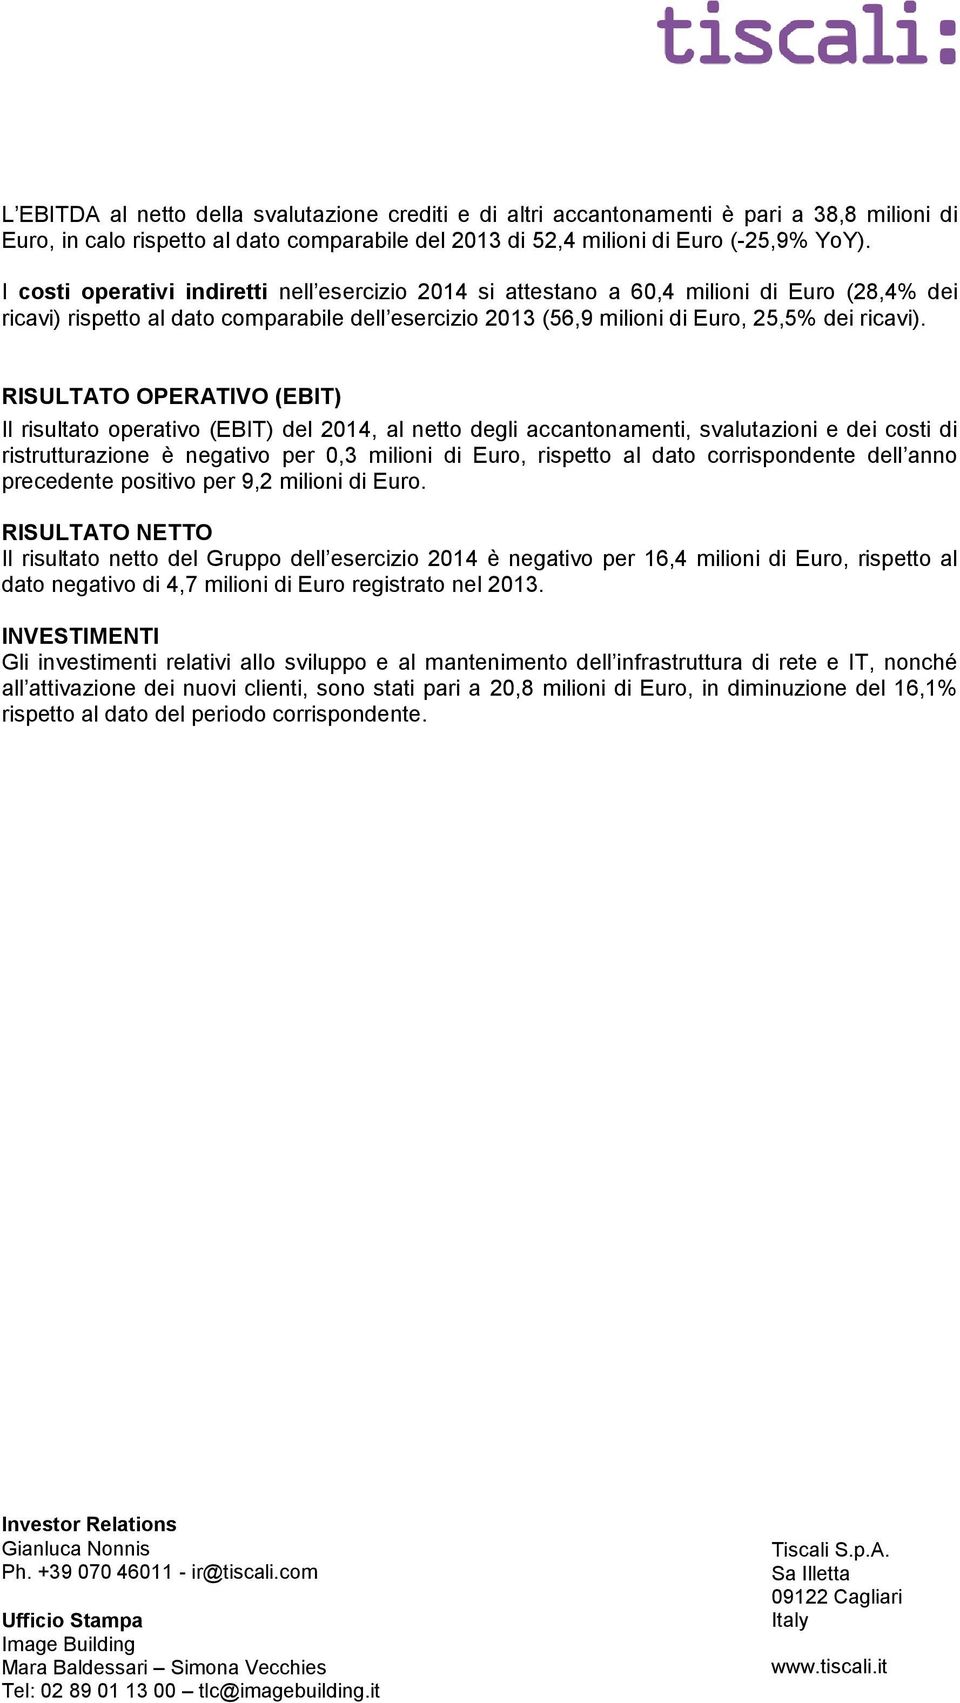 RISULTATO OPERATIVO (EBIT) Il risultato operativo (EBIT) del 2014, al netto degli accantonamenti, svalutazioni e dei costi di ristrutturazione è negativo per 0,3 milioni di Euro, rispetto al dato